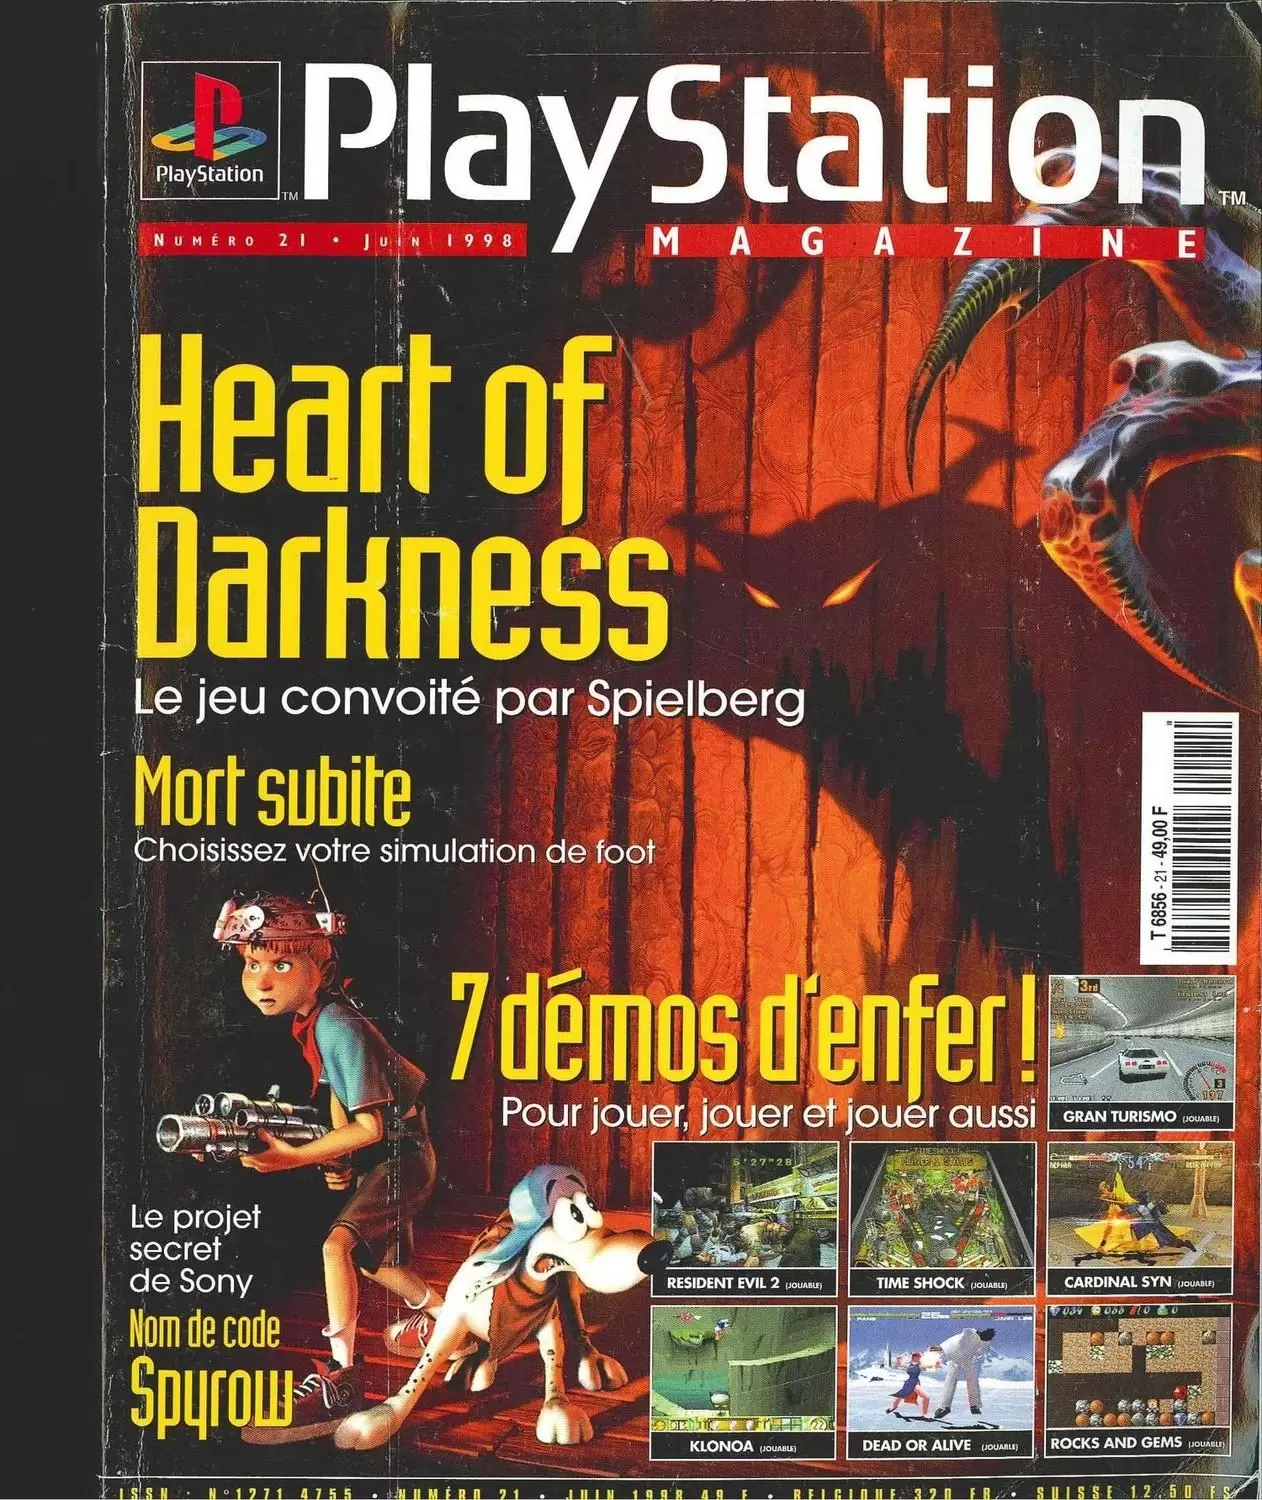 Playstation Magazine - Playstation Magazine #21